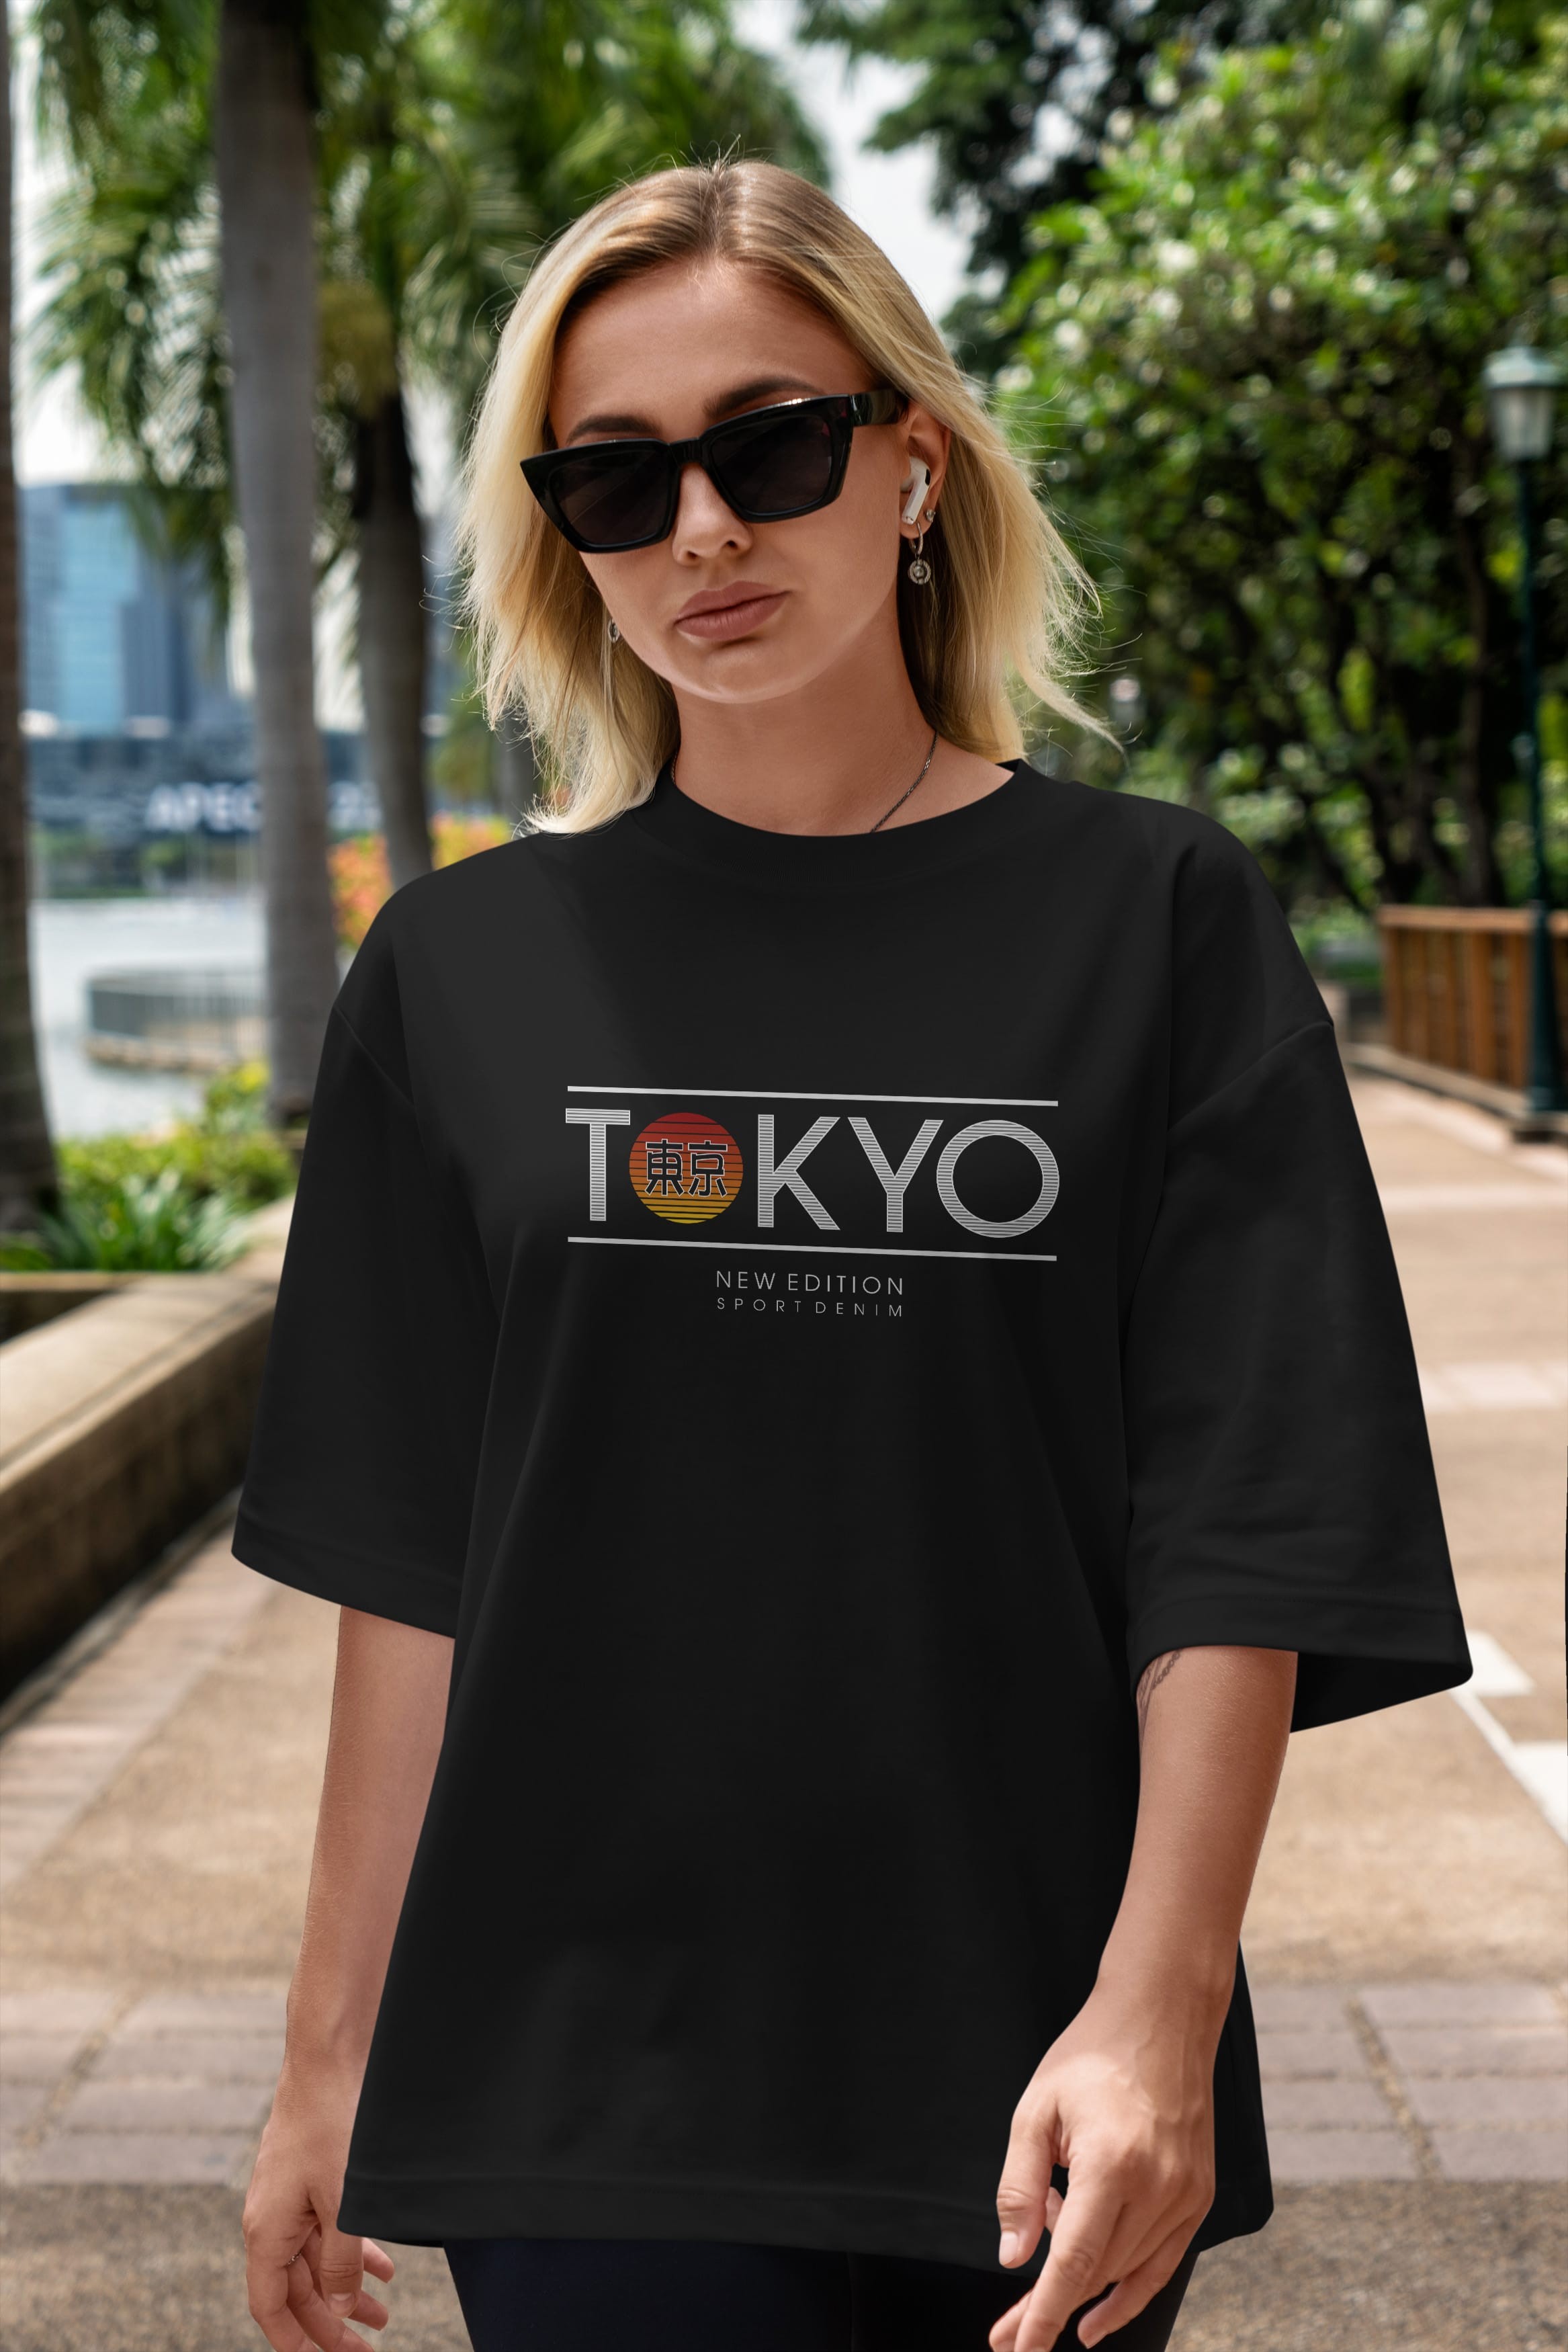 Tokyo Sport Ön Baskılı Oversize t-shirt Erkek Kadın Unisex